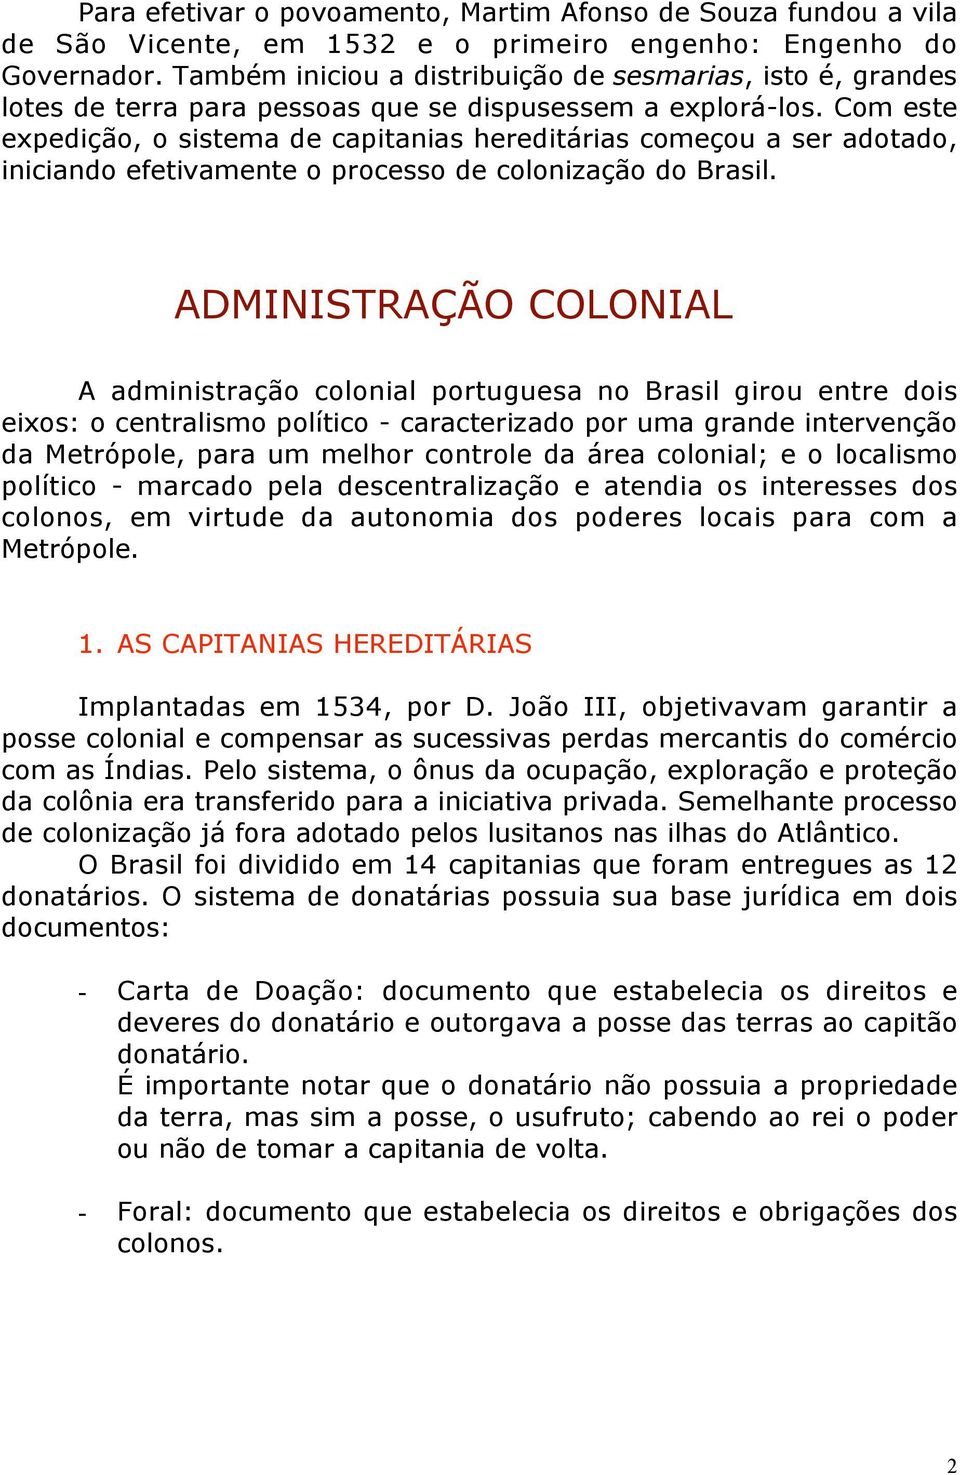 Com este expedição, o sistema de capitanias hereditárias começou a ser adotado, iniciando efetivamente o processo de colonização do Brasil.